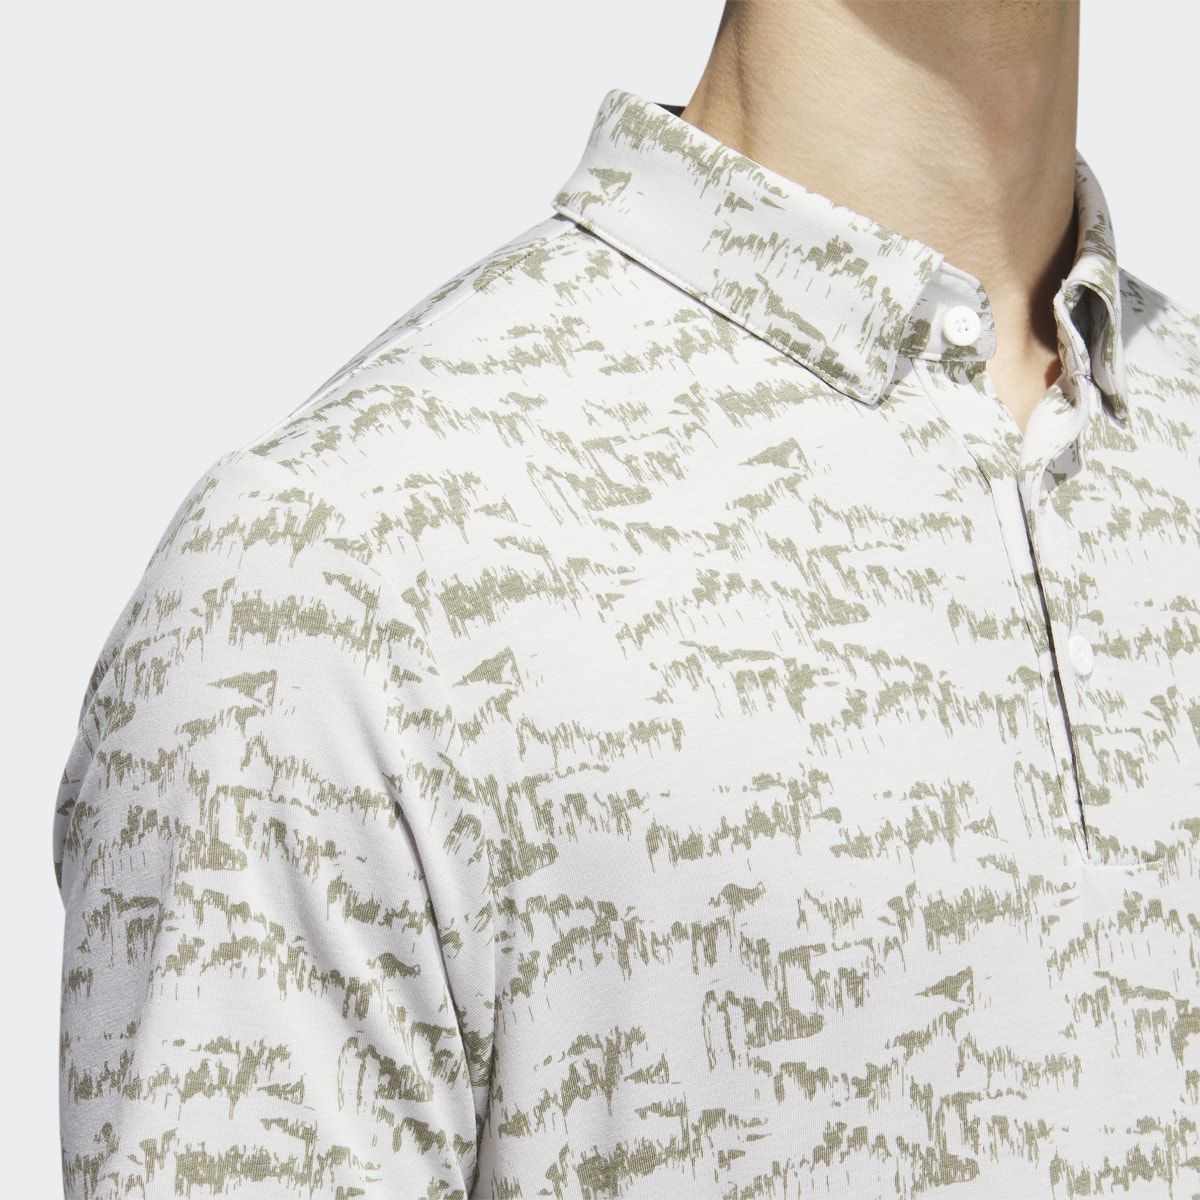 Adidas Go-To Printed Polo Shirt. 9